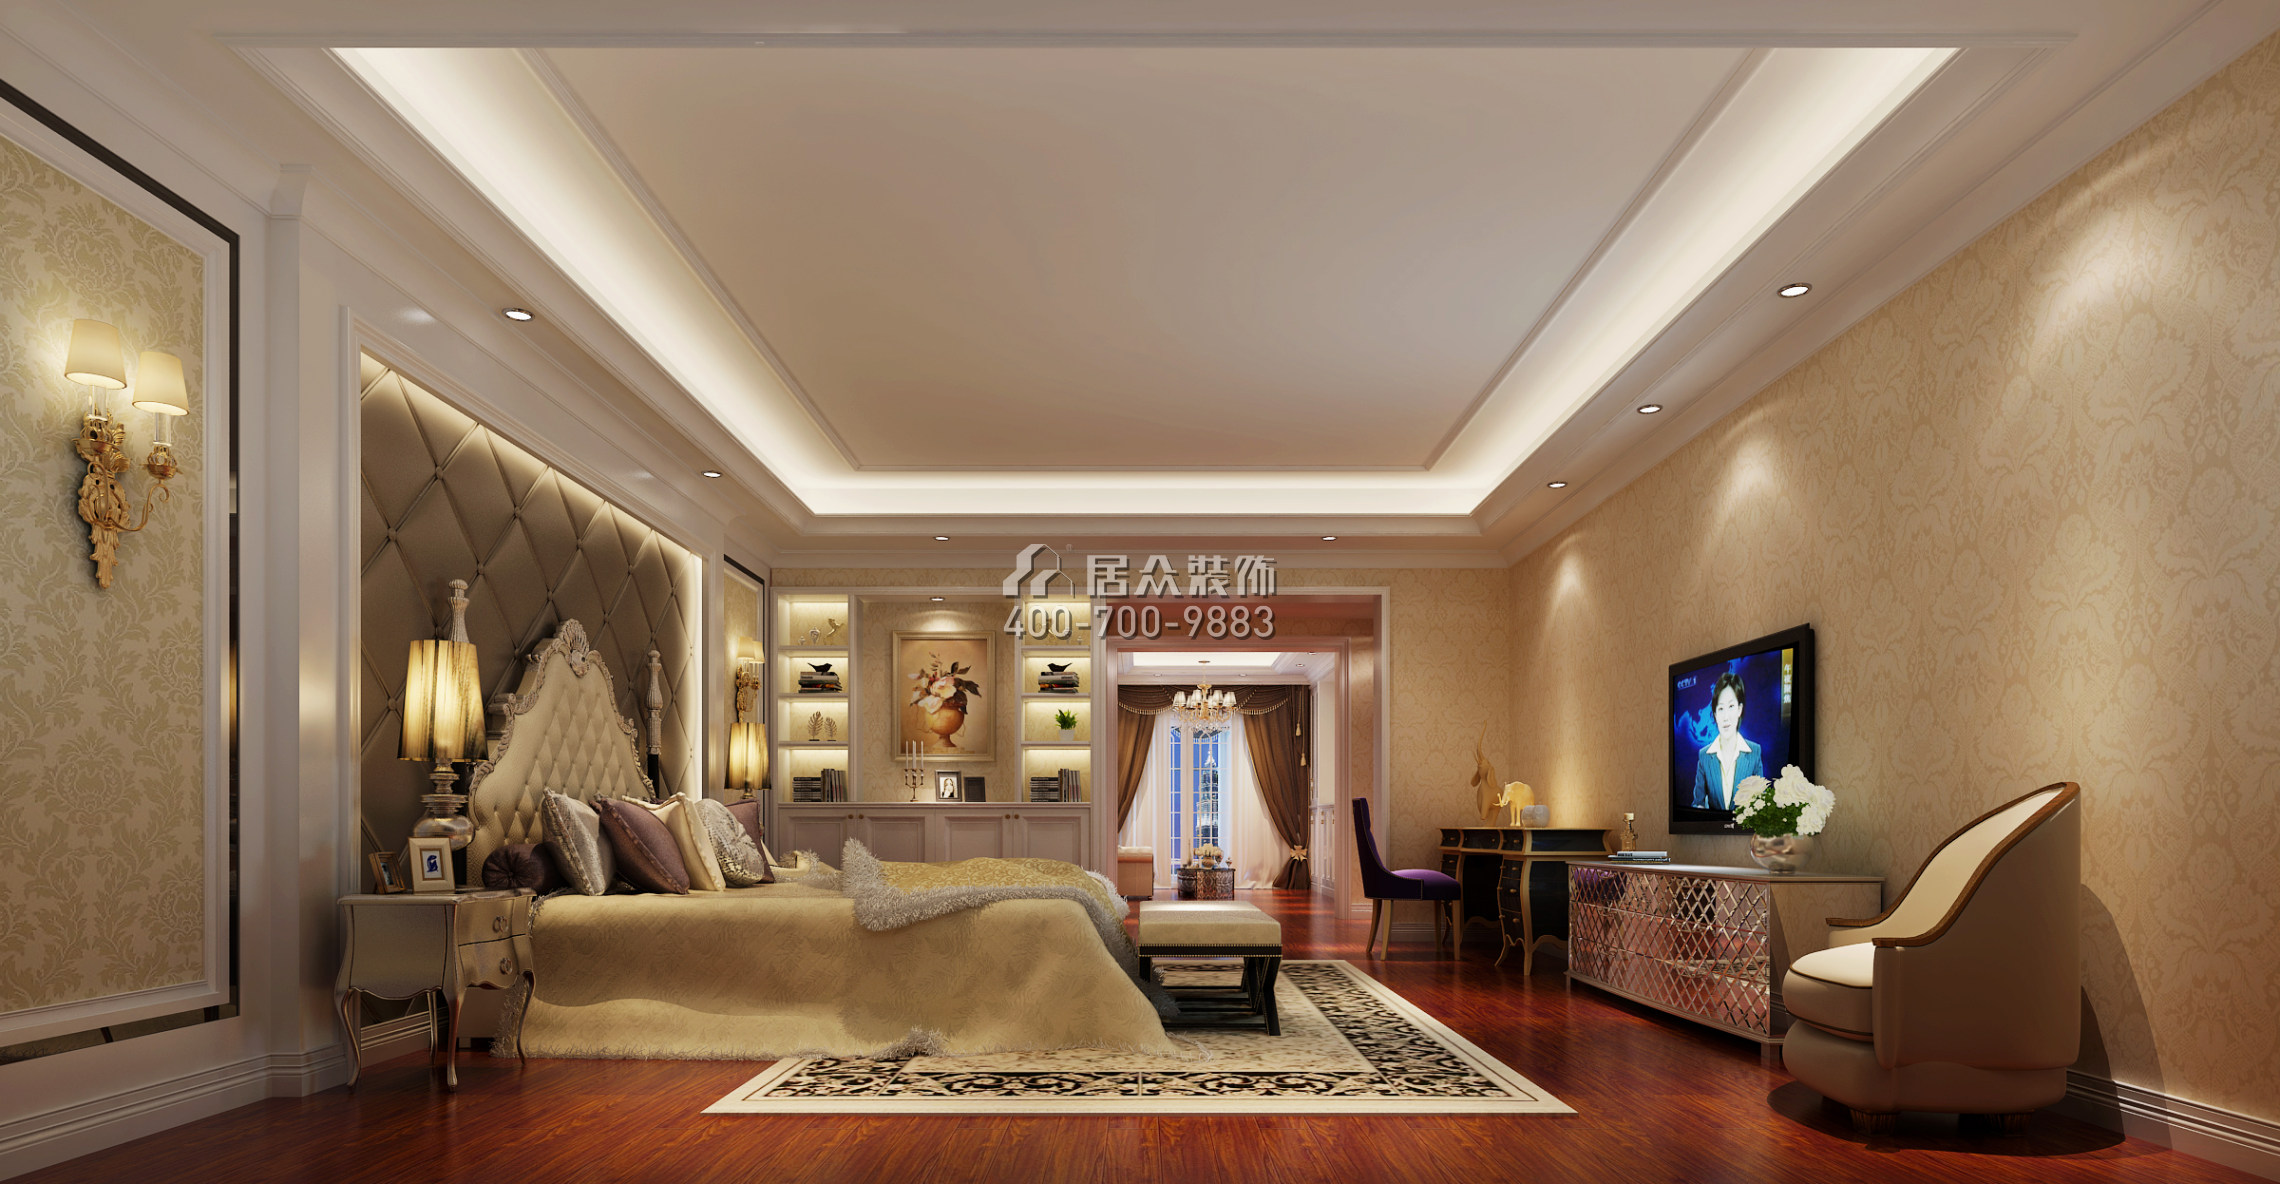 容桂碧桂園580平方米歐式風格復式戶型臥室裝修效果圖